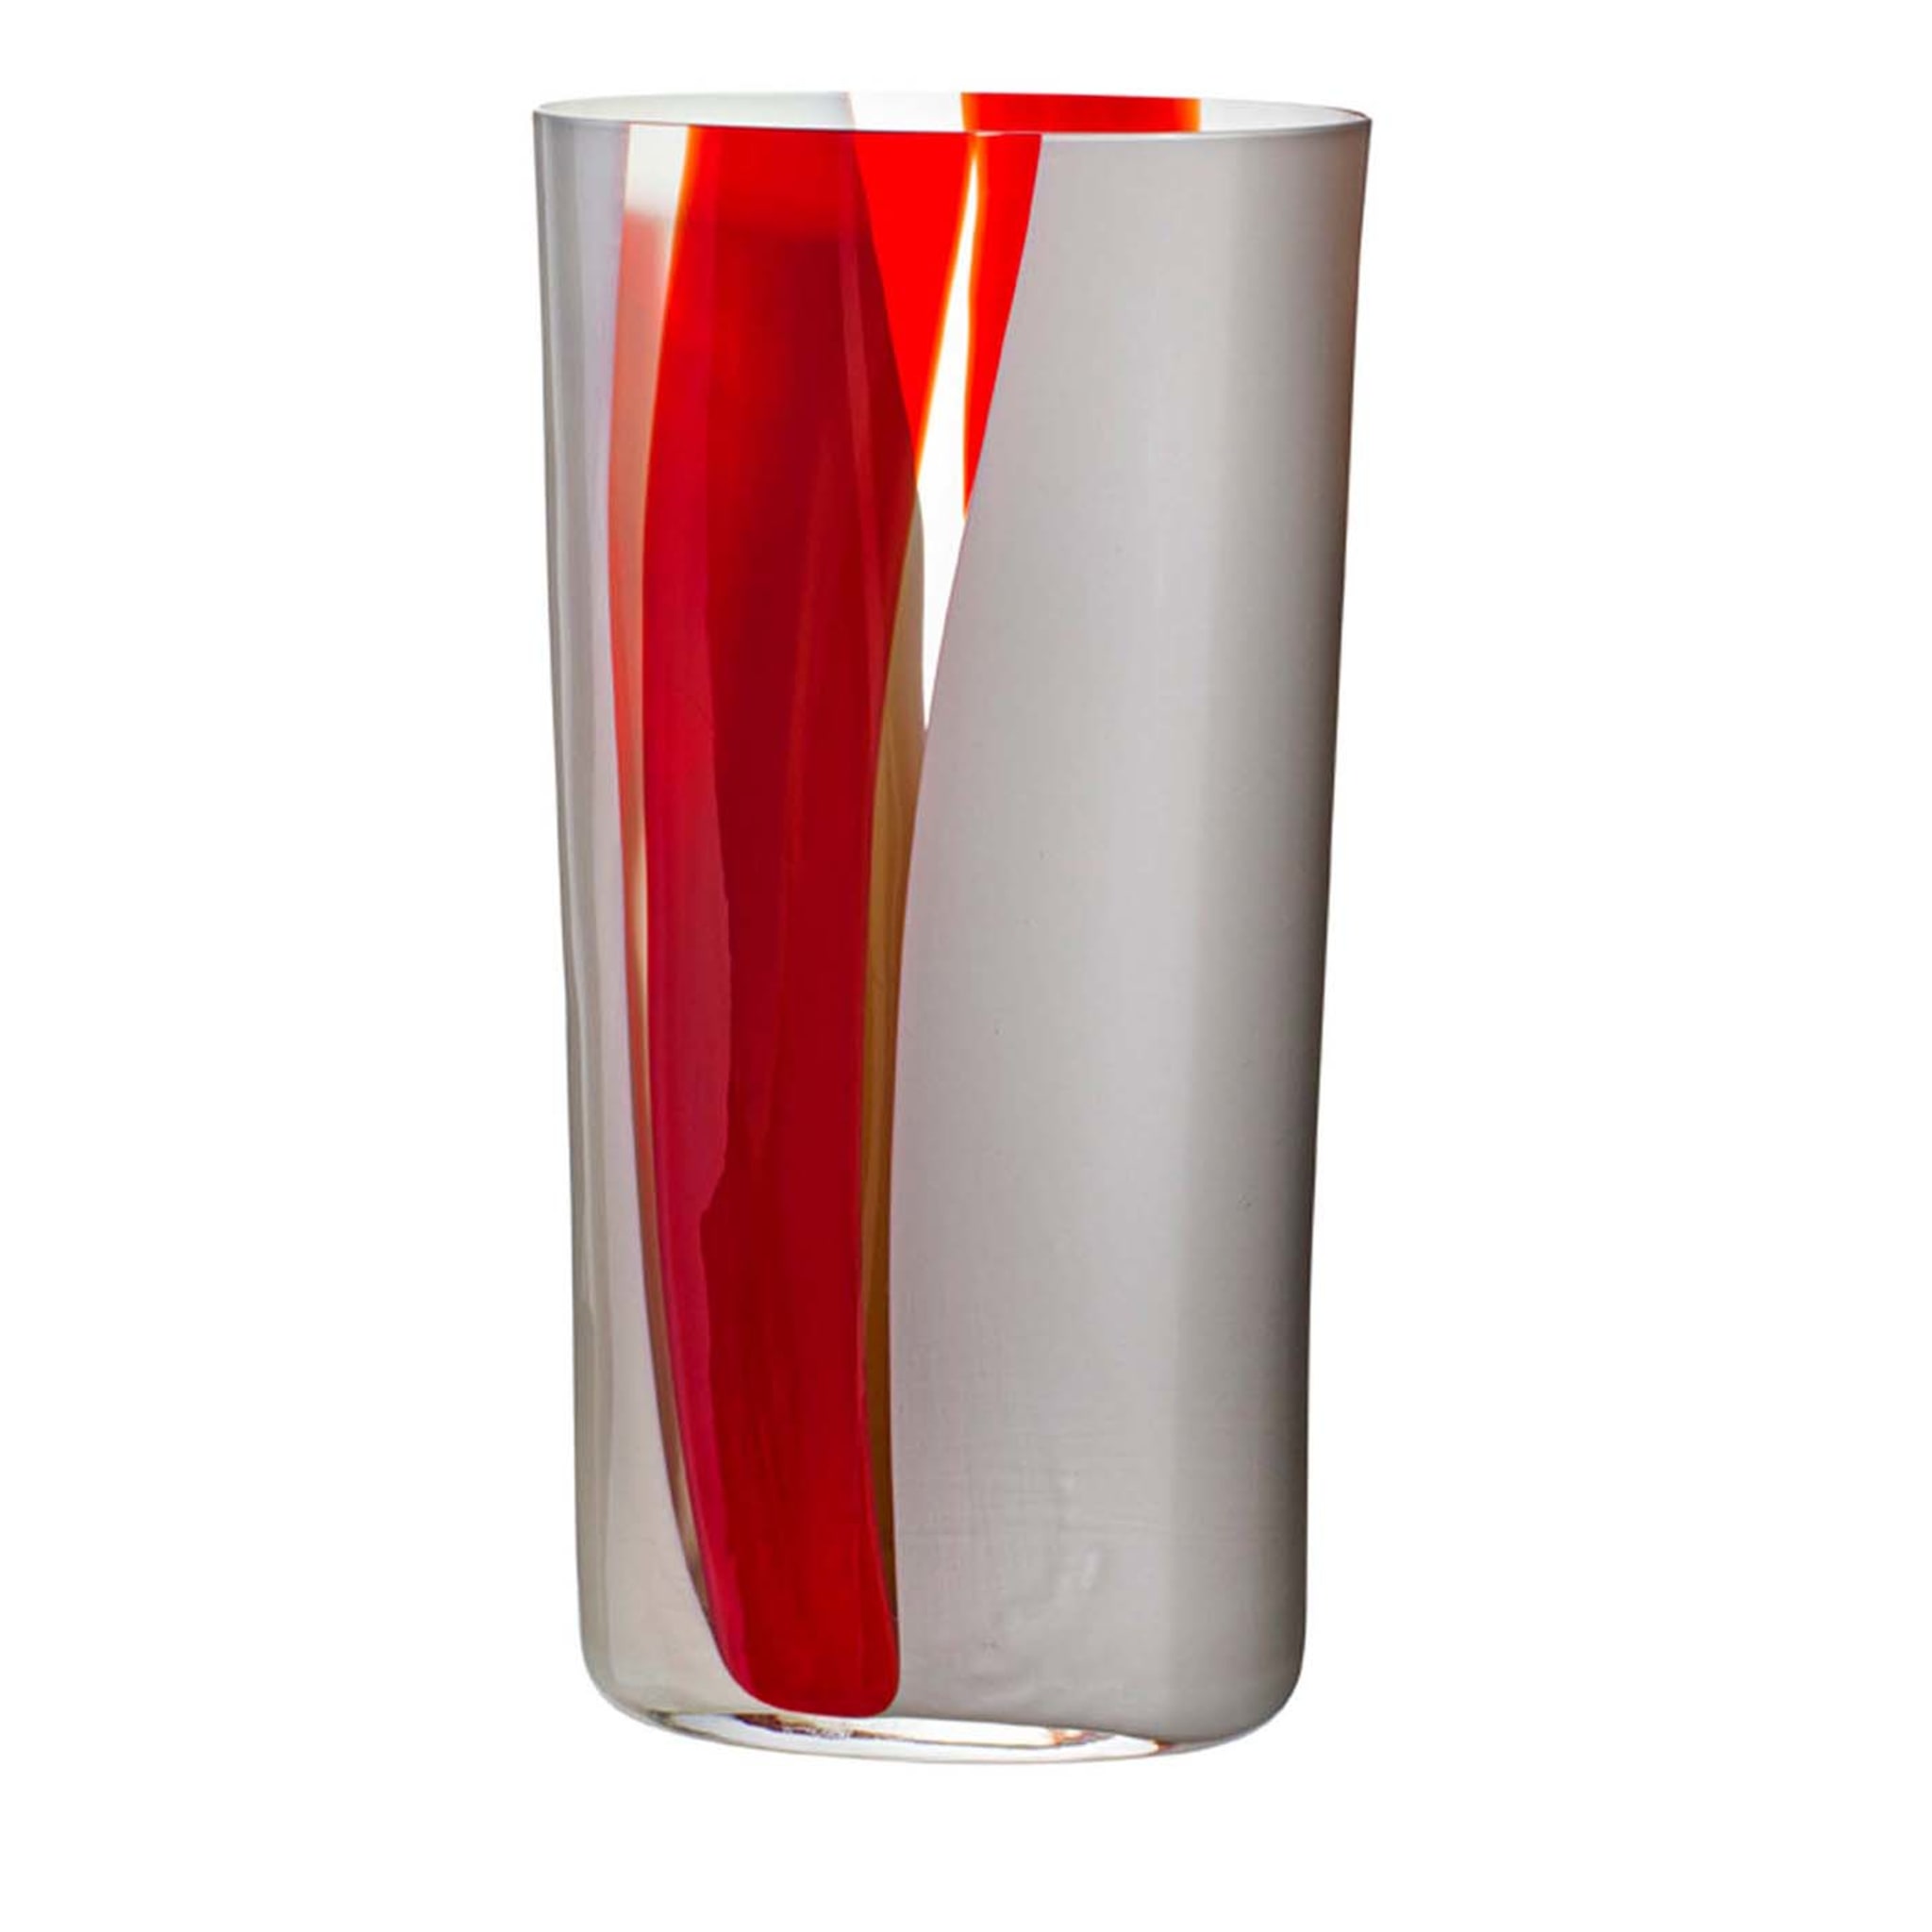 Ovale Vase mit weißen und roten Streifen von Carlo Moretti #2 - Hauptansicht